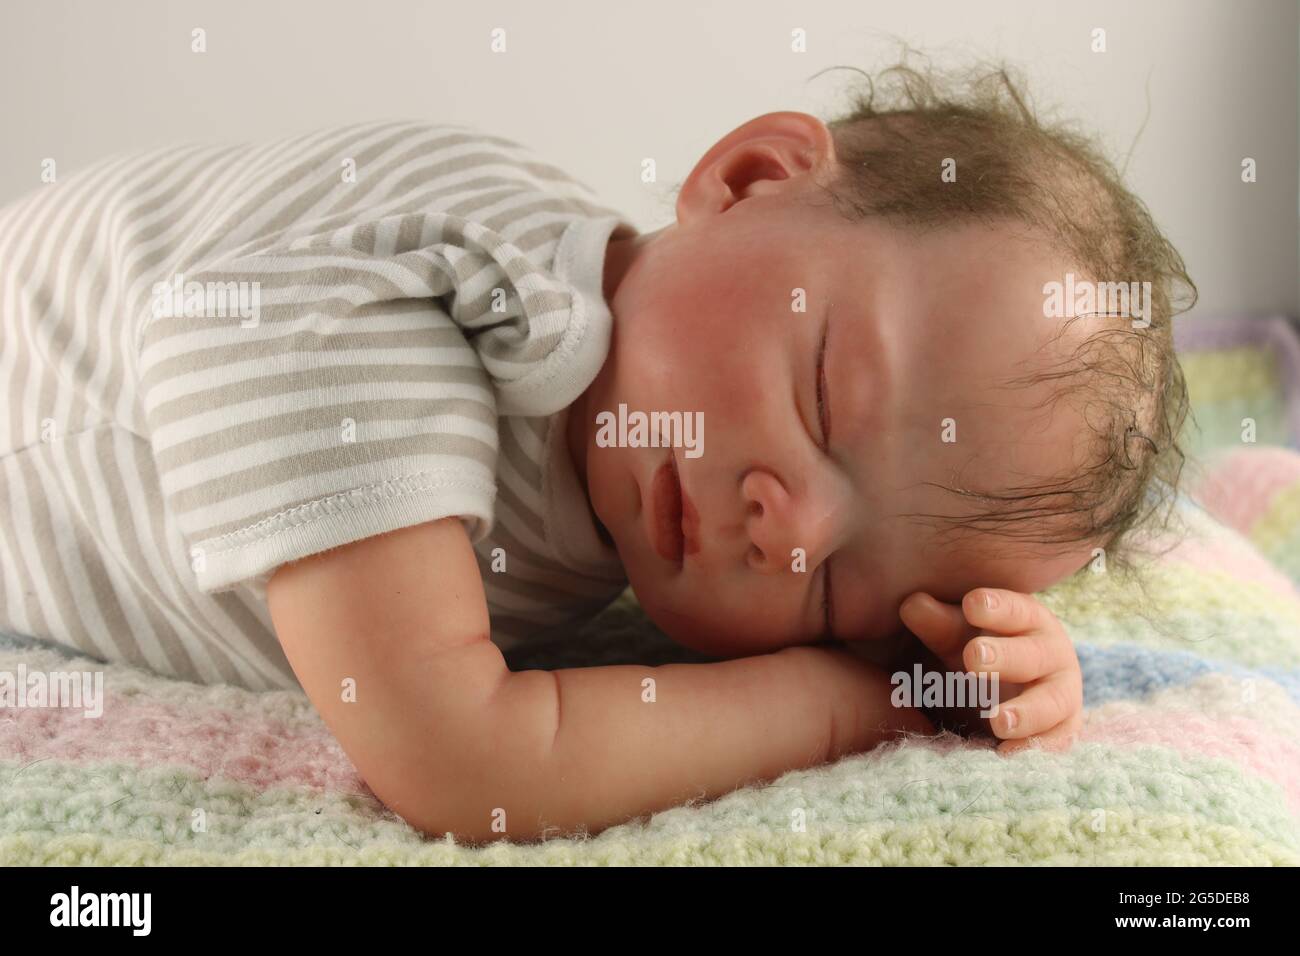 Bébé garçon endormi sur une couverture tricotée, concept de parentalité représenté par une poupée rénée Banque D'Images